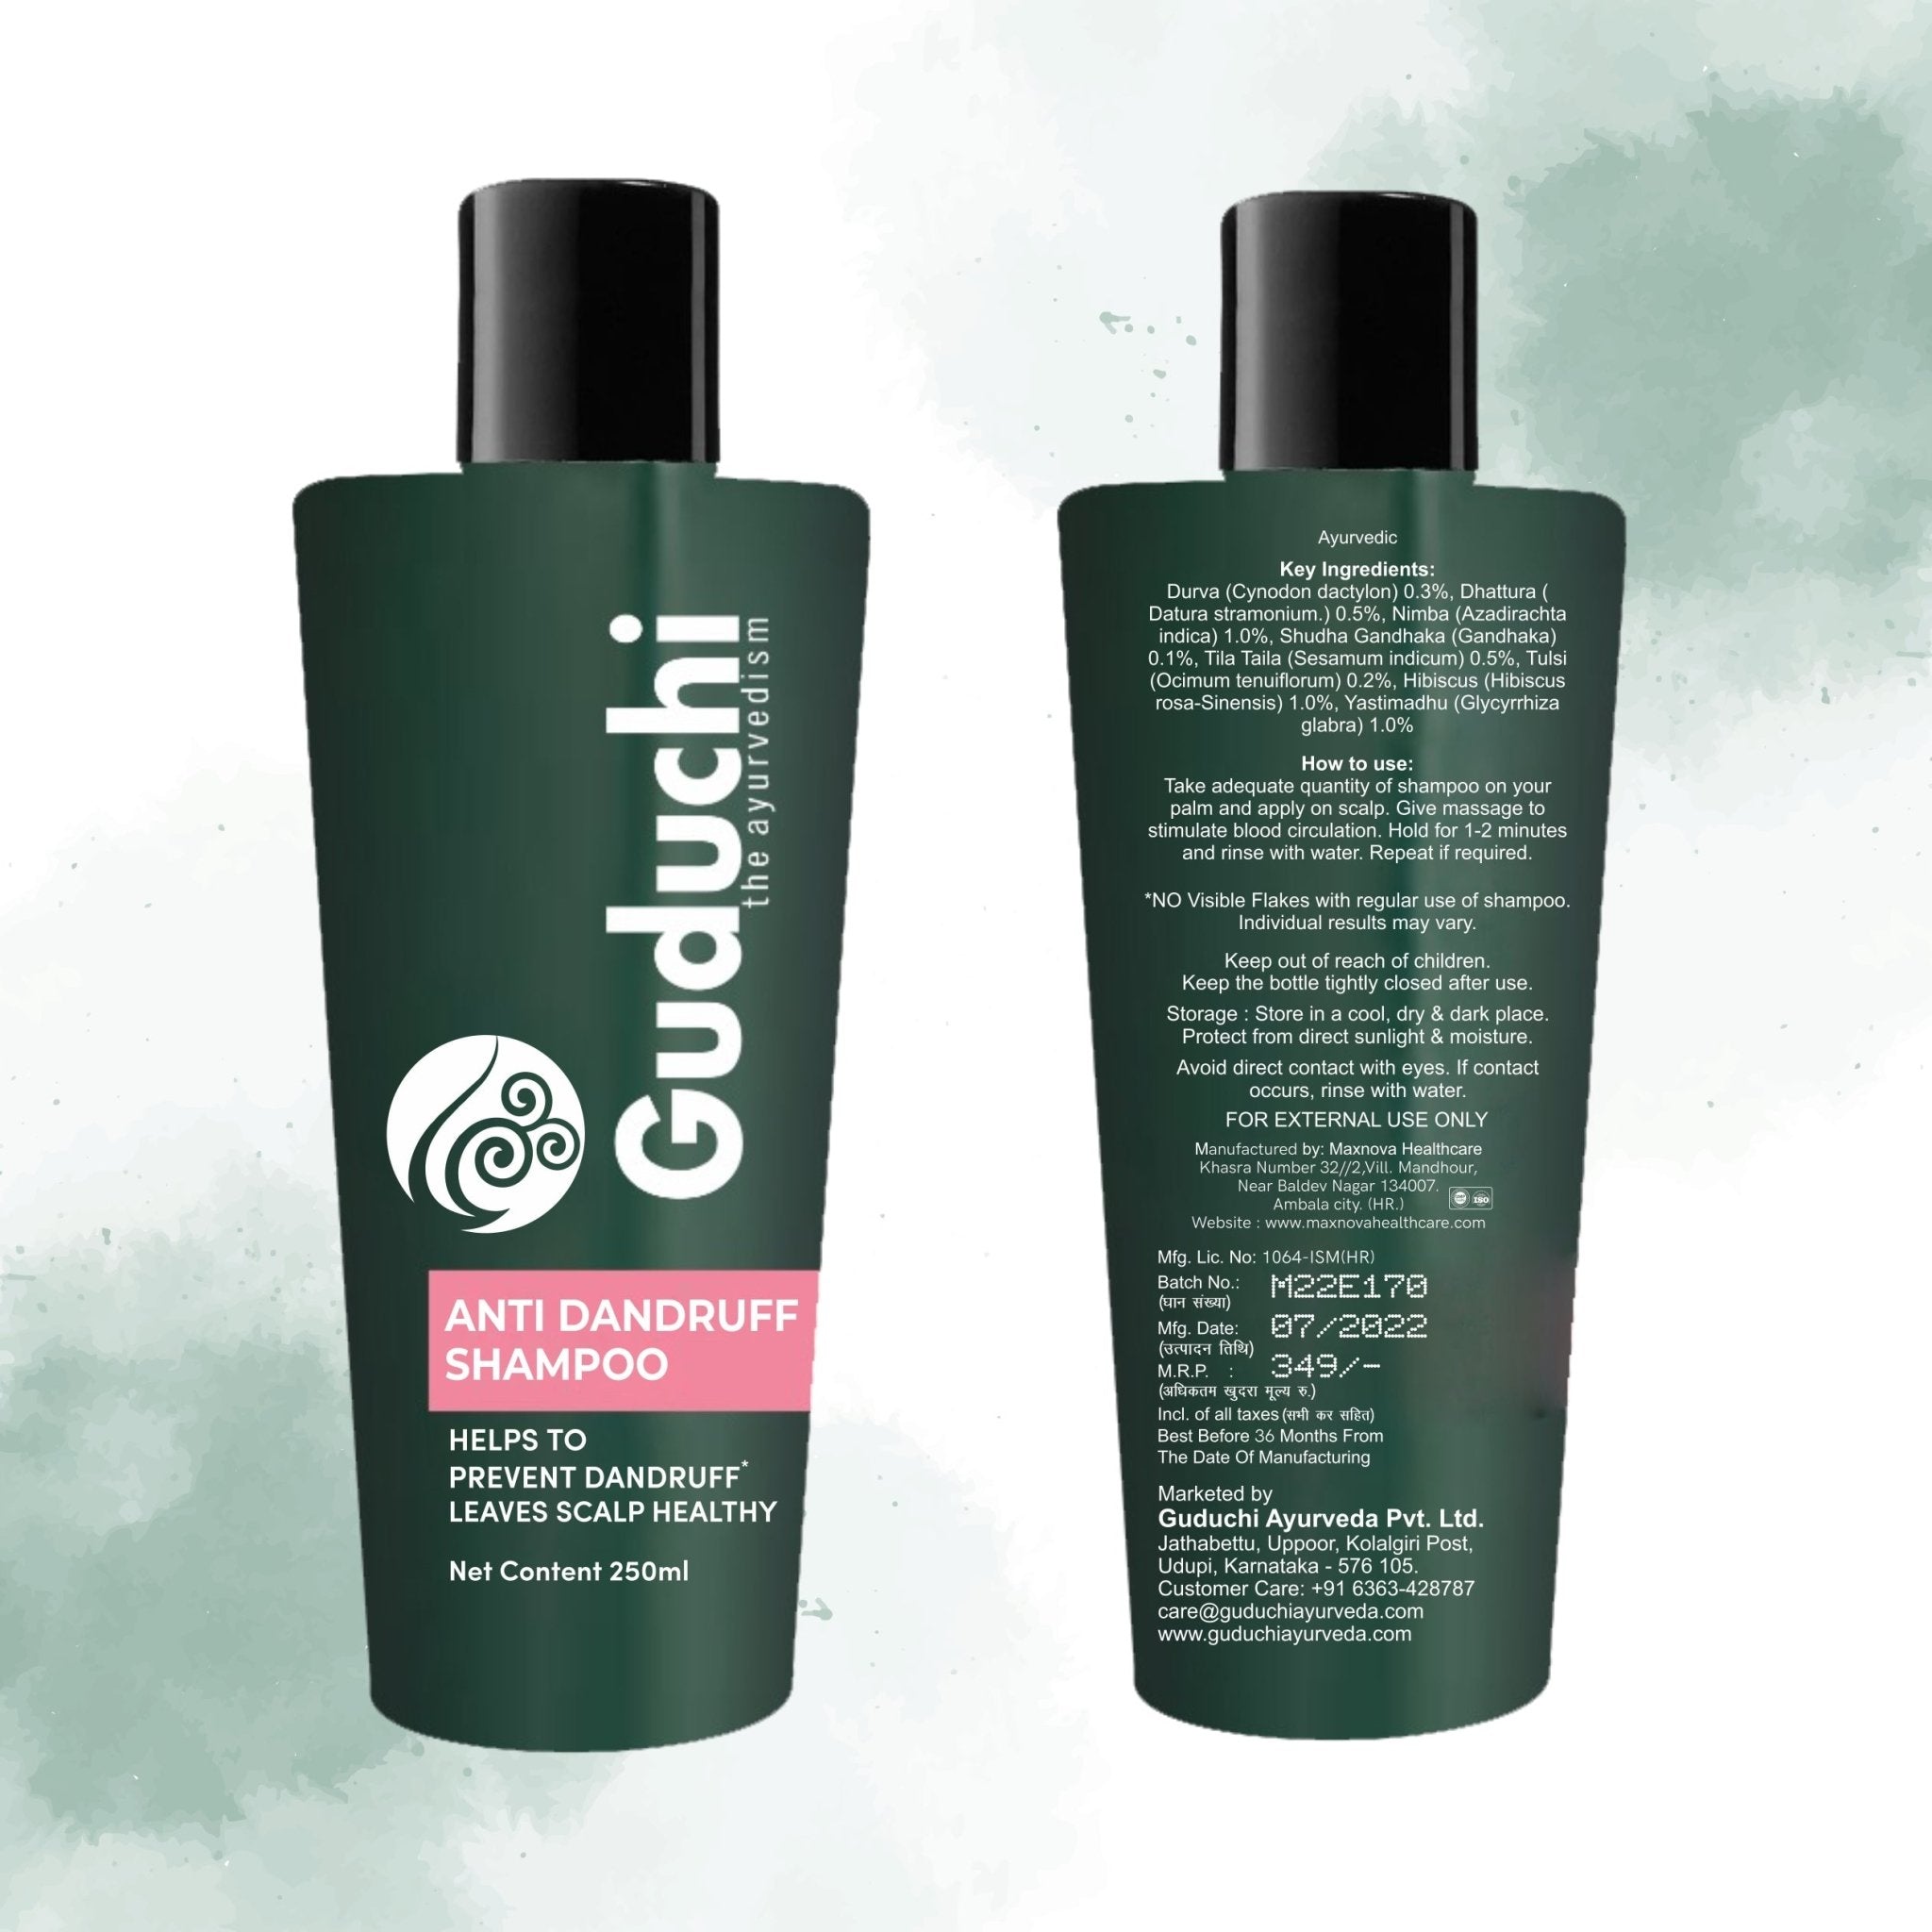 Guduchi Ayurveda Anti Dandruff shampoo made from Durva, Neem and Licorice| SLS & Paraben FREE | Natural Actives | 250ML | Rs 349 - Guduchi Ayurveda